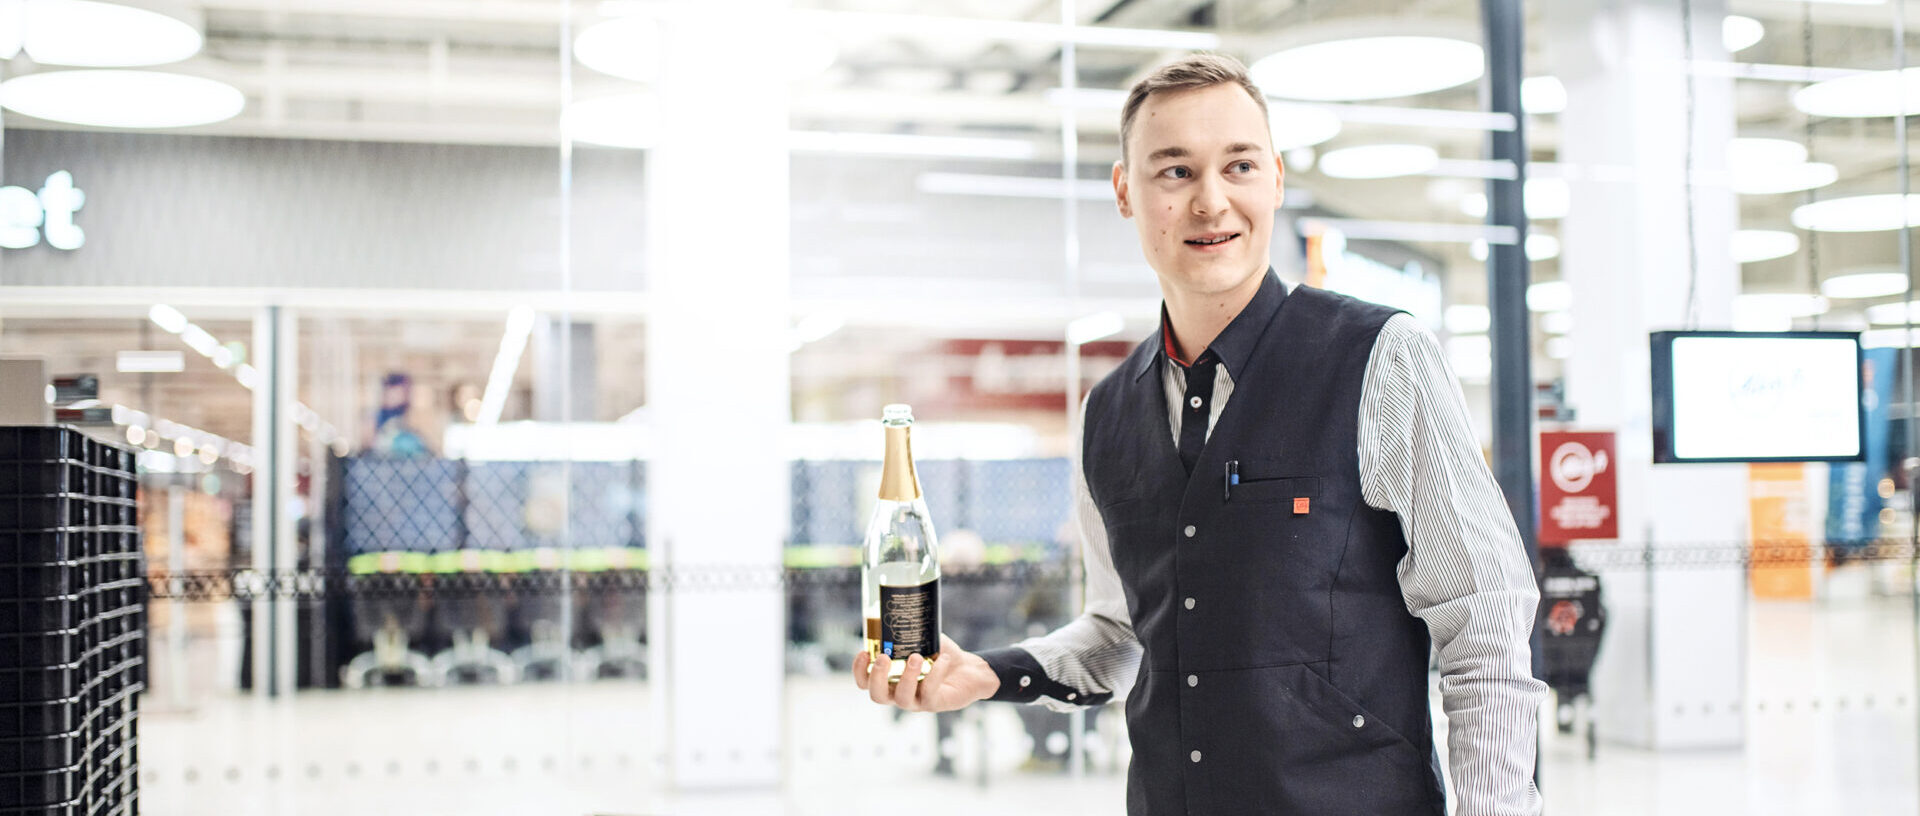 Markus Niskanen työpaikallaan Alkossa, seisoo sisäänkäynnin luona viinipullo kädessään hymyssä suin.